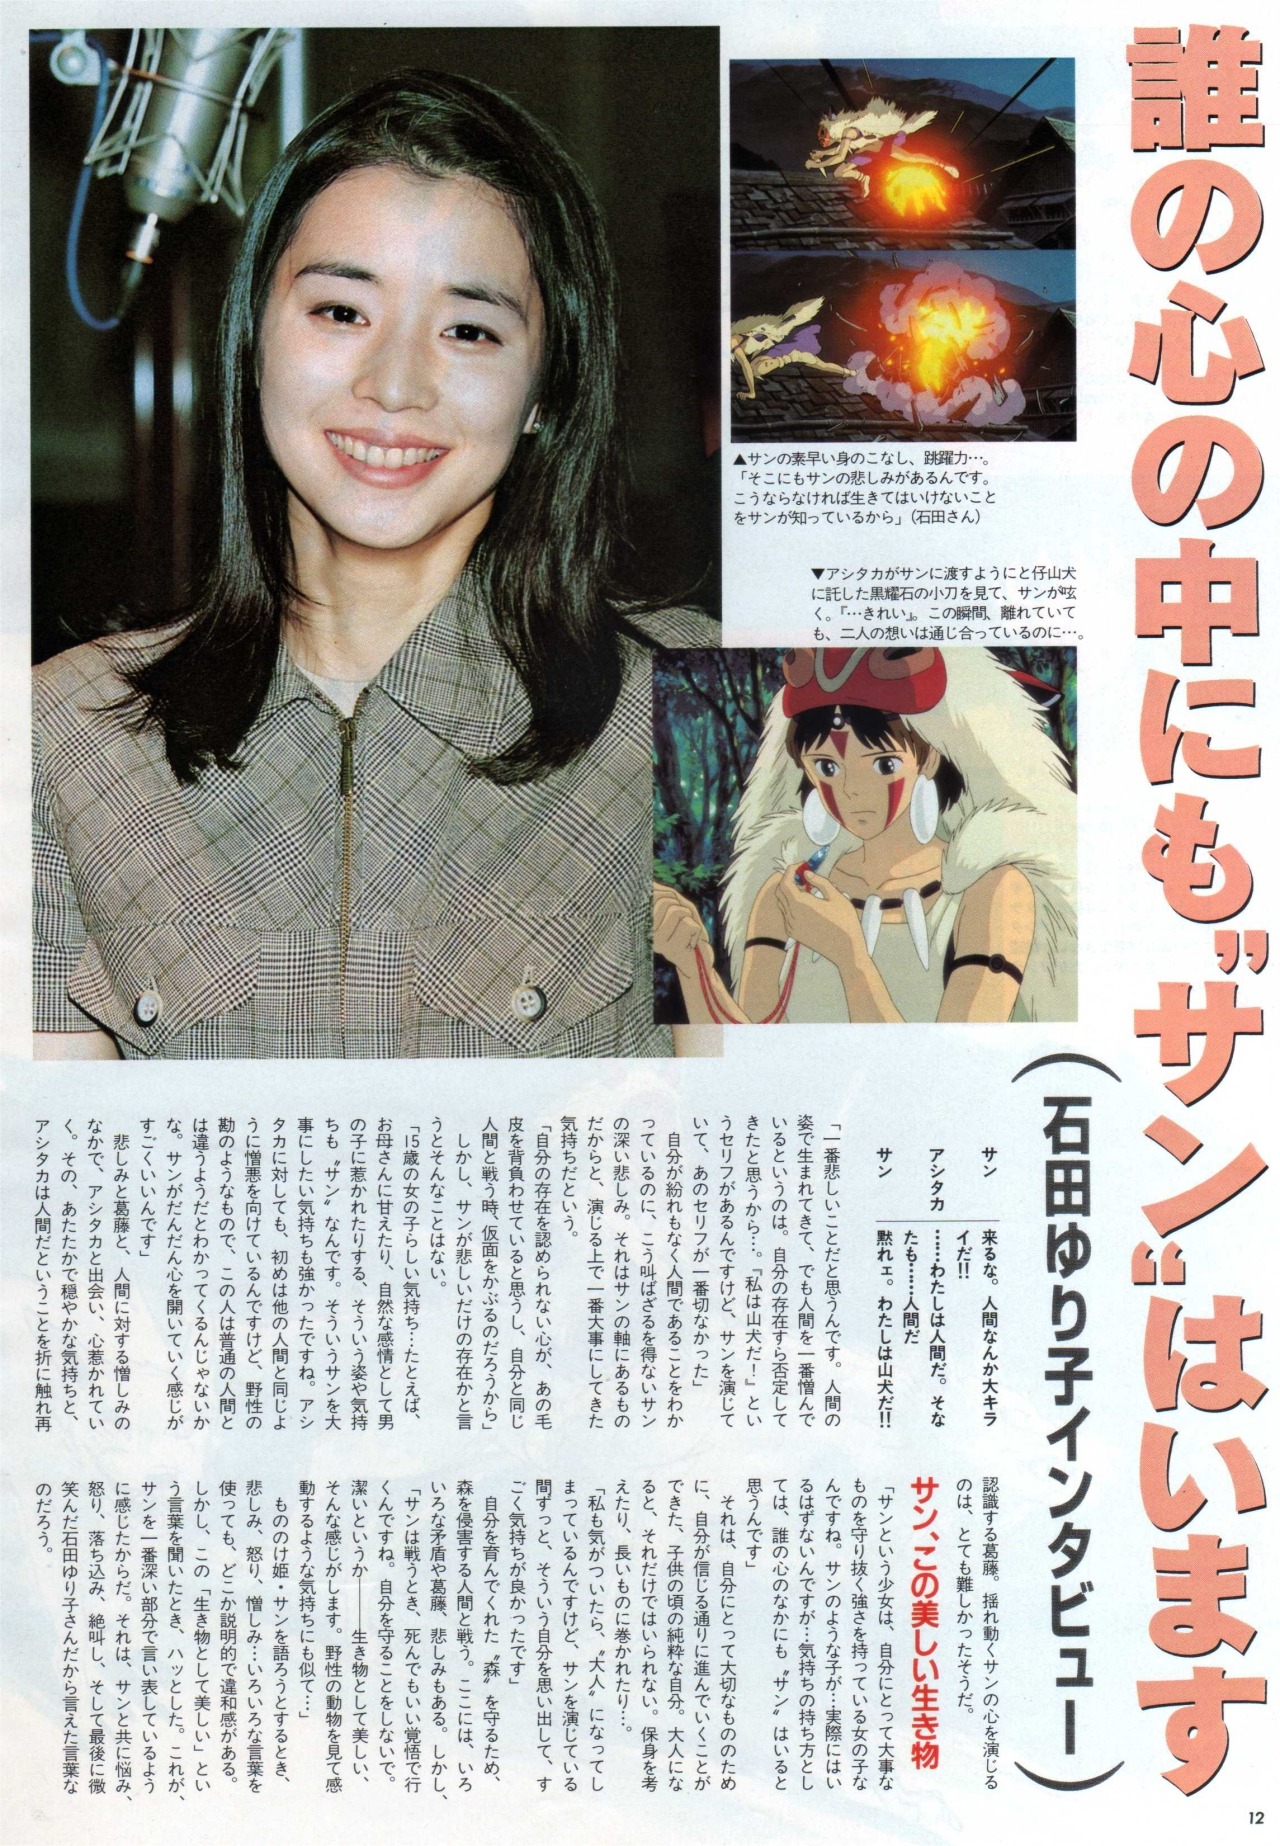 animarchive:    Animage (08/1997) - Princess Mononoke: interview with Hayao Miyazaki